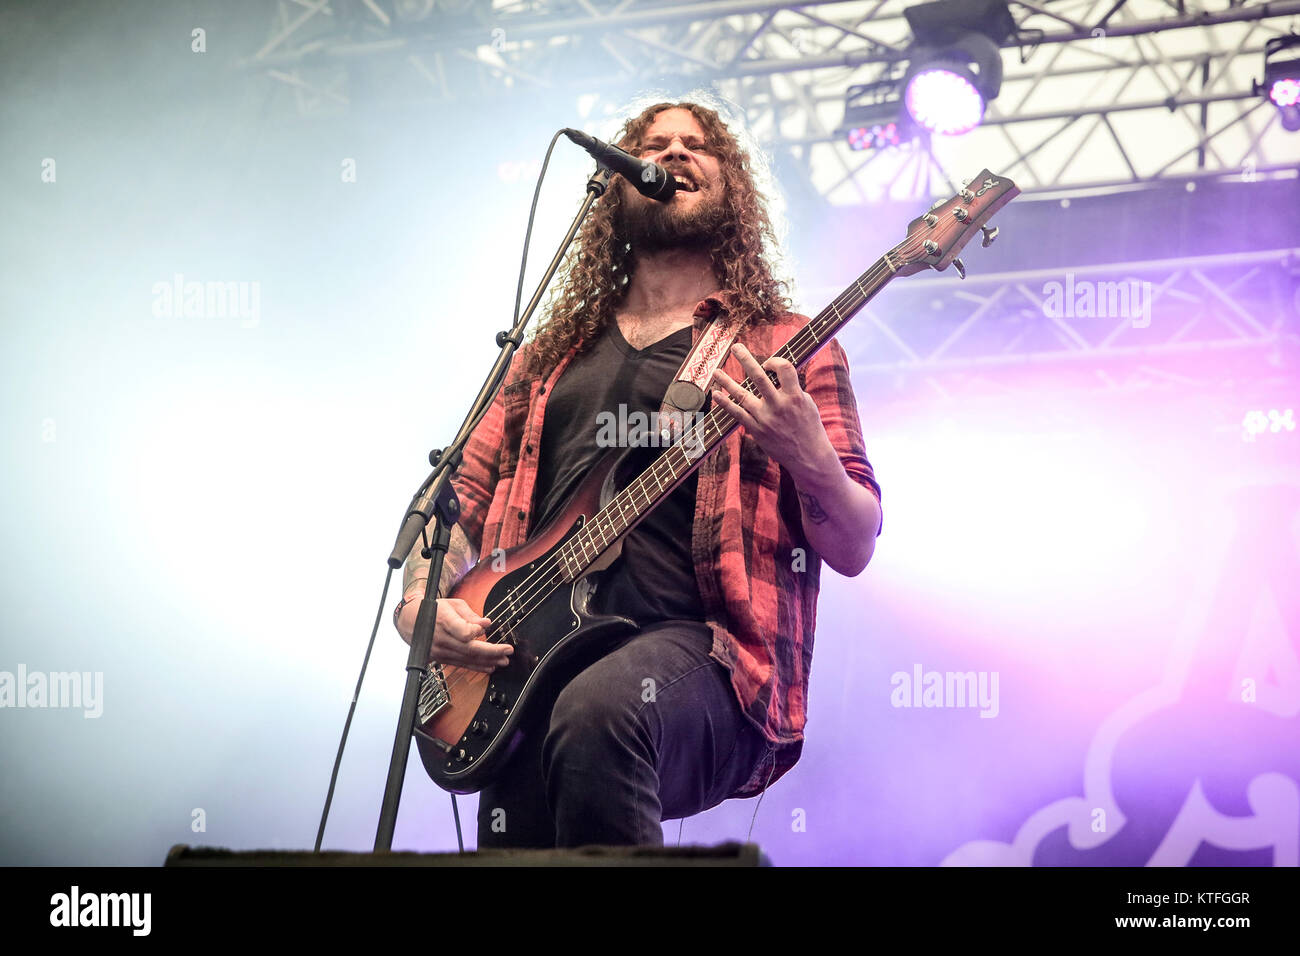 Le groupe de hard rock Monster Truck effectue un concert live au festival  de musique suédois Sweden Rock Festival 2016. Ici le chanteur et bassiste  Jon Harvey est vu sur scène. La